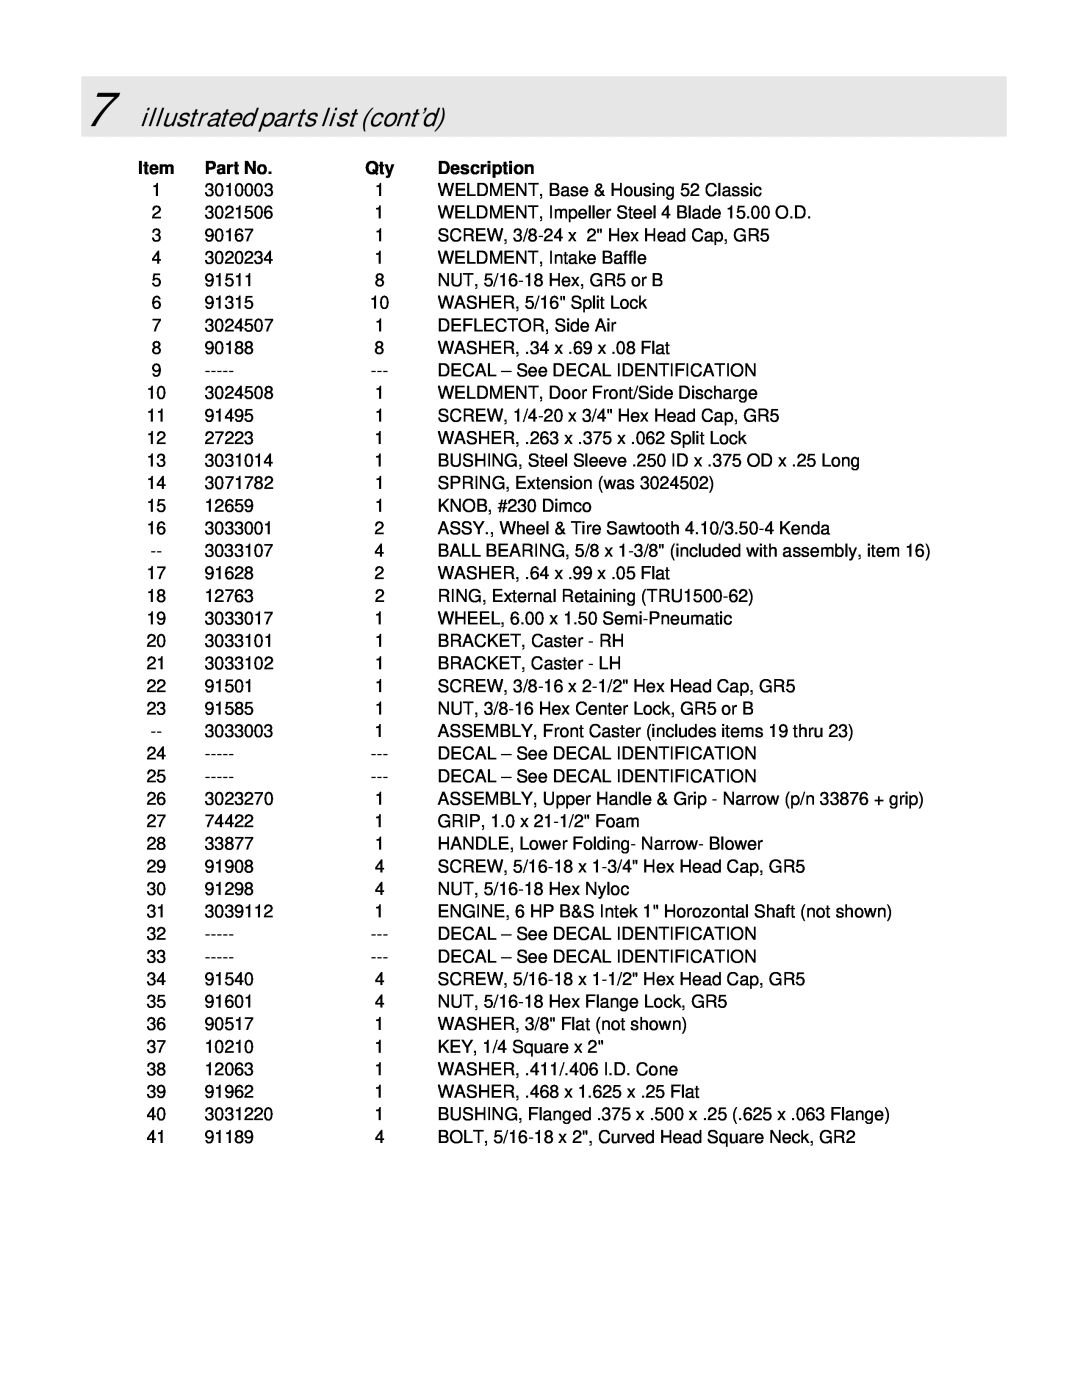 Simplicity LBC6151BV manual illustrated parts list cont’d, Description 